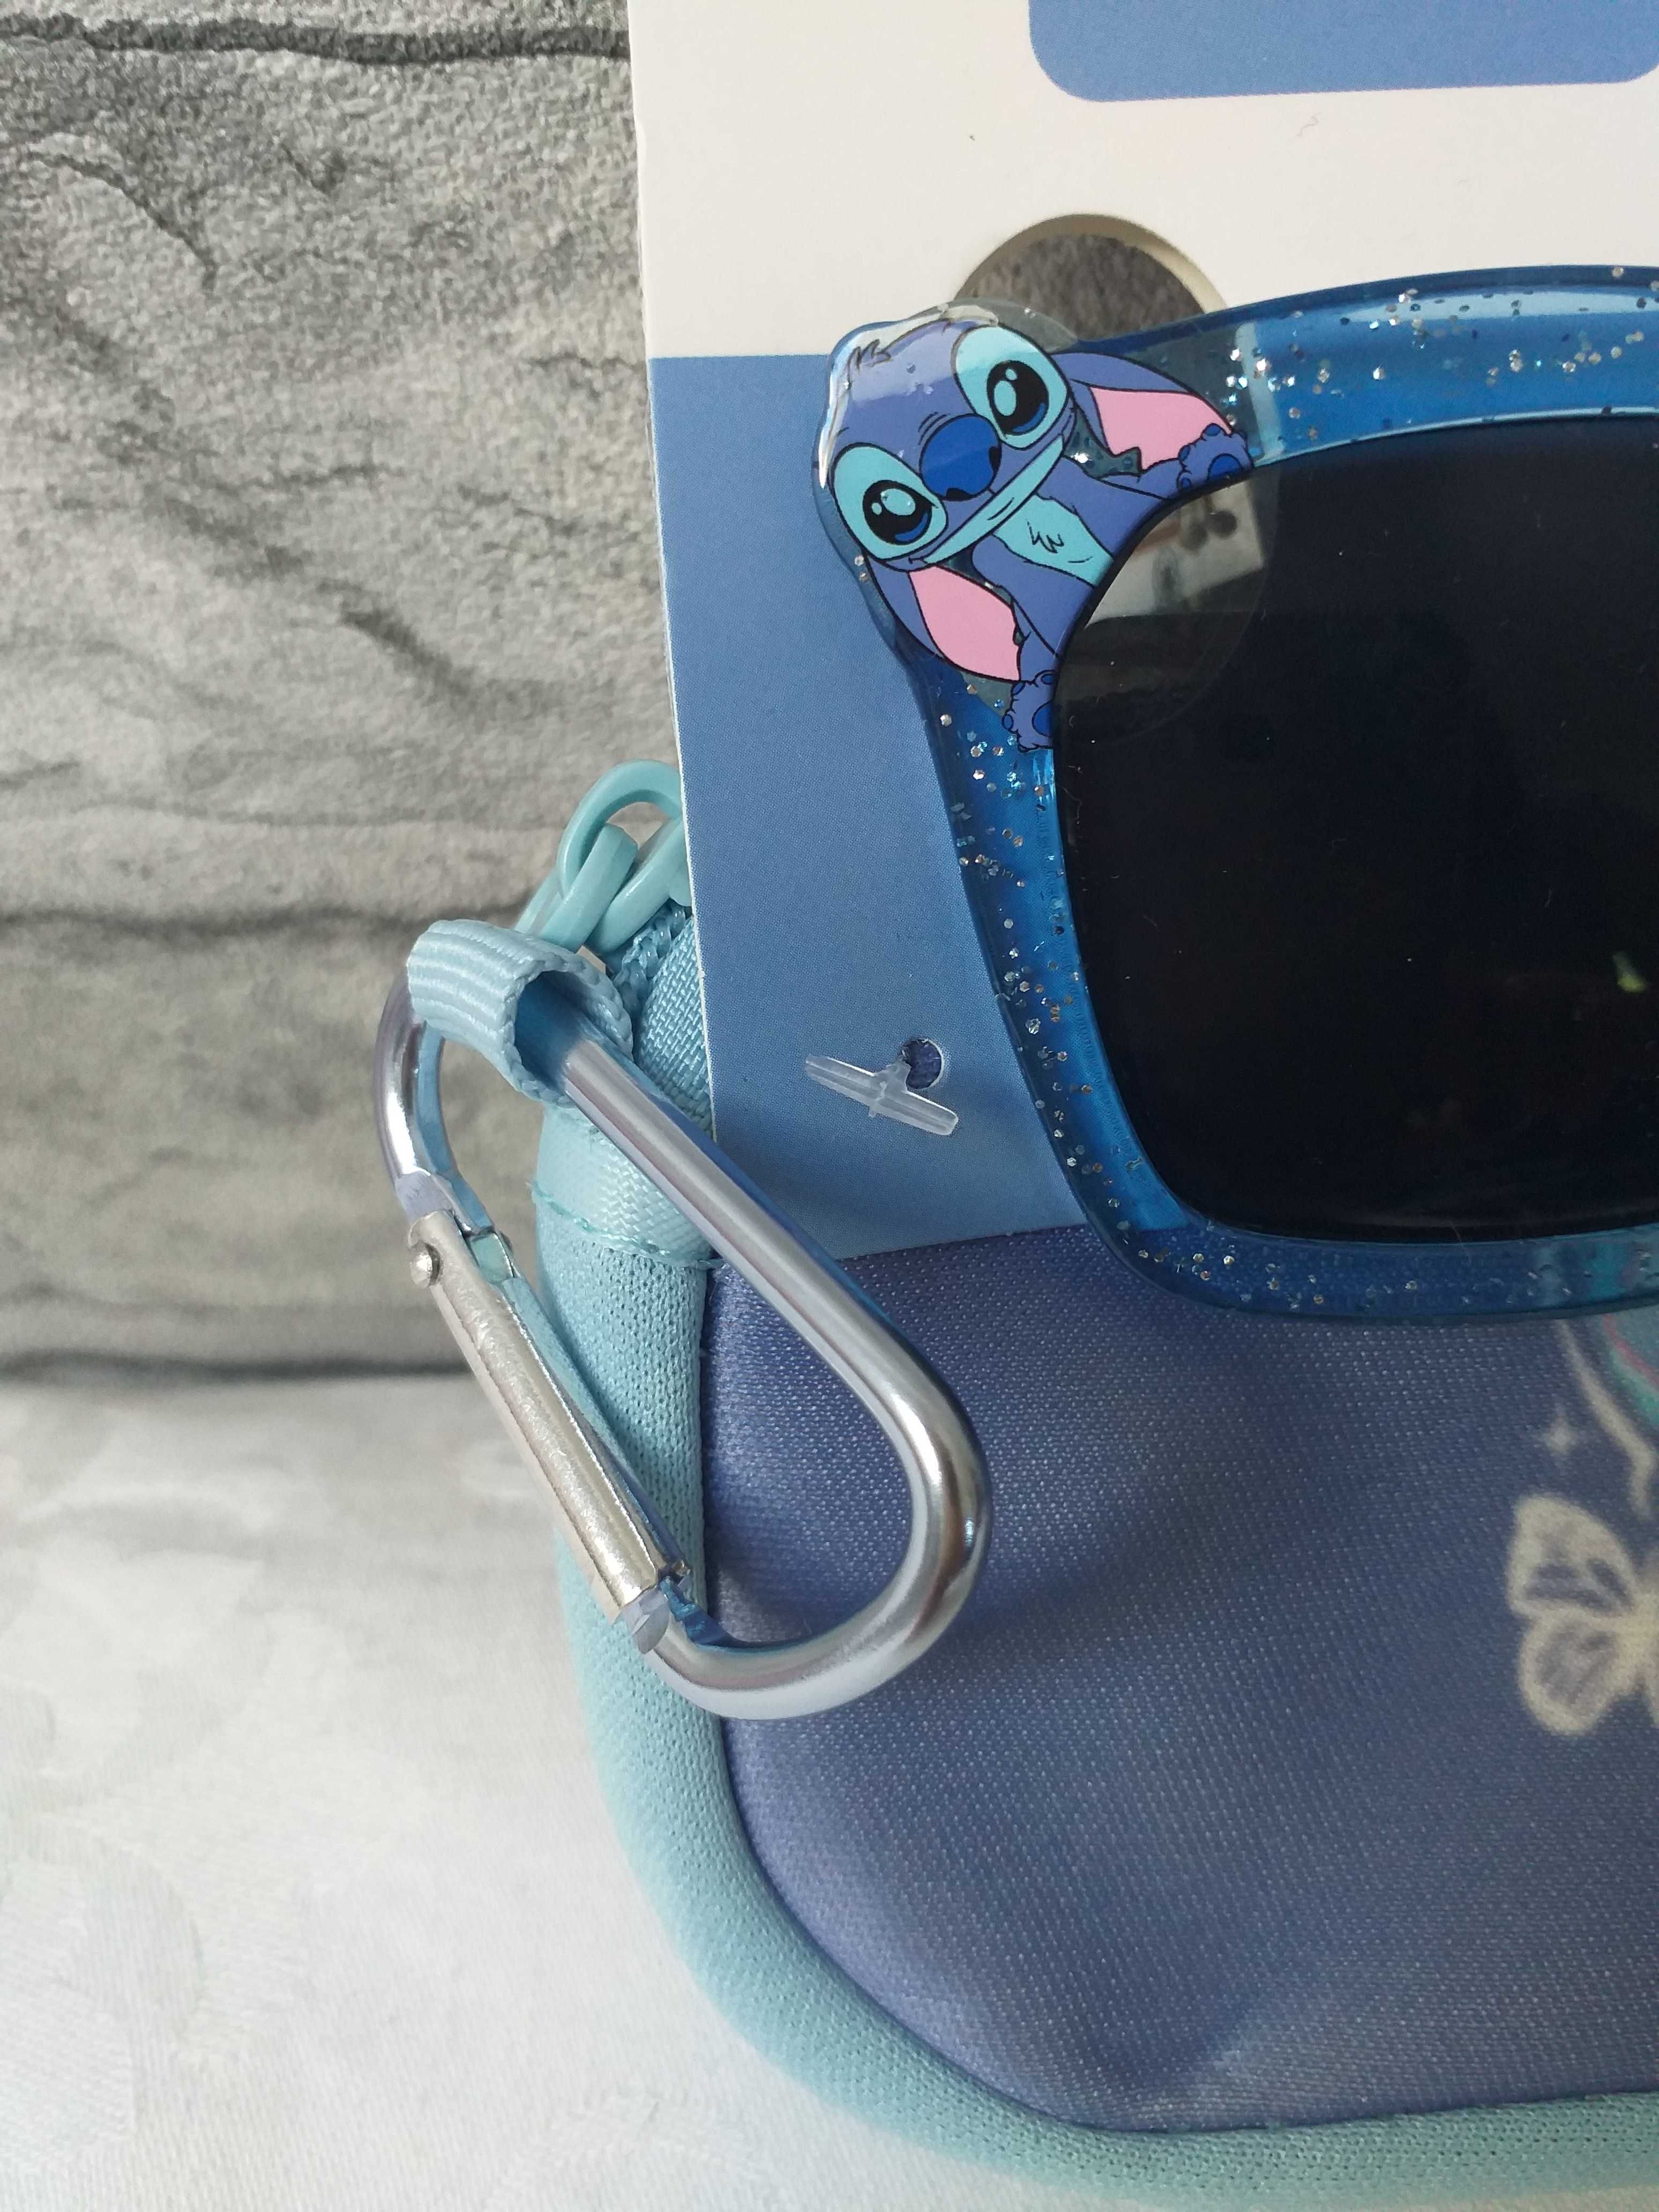 Okulary przeciwsłoneczne Disney Stitch PRIMARK